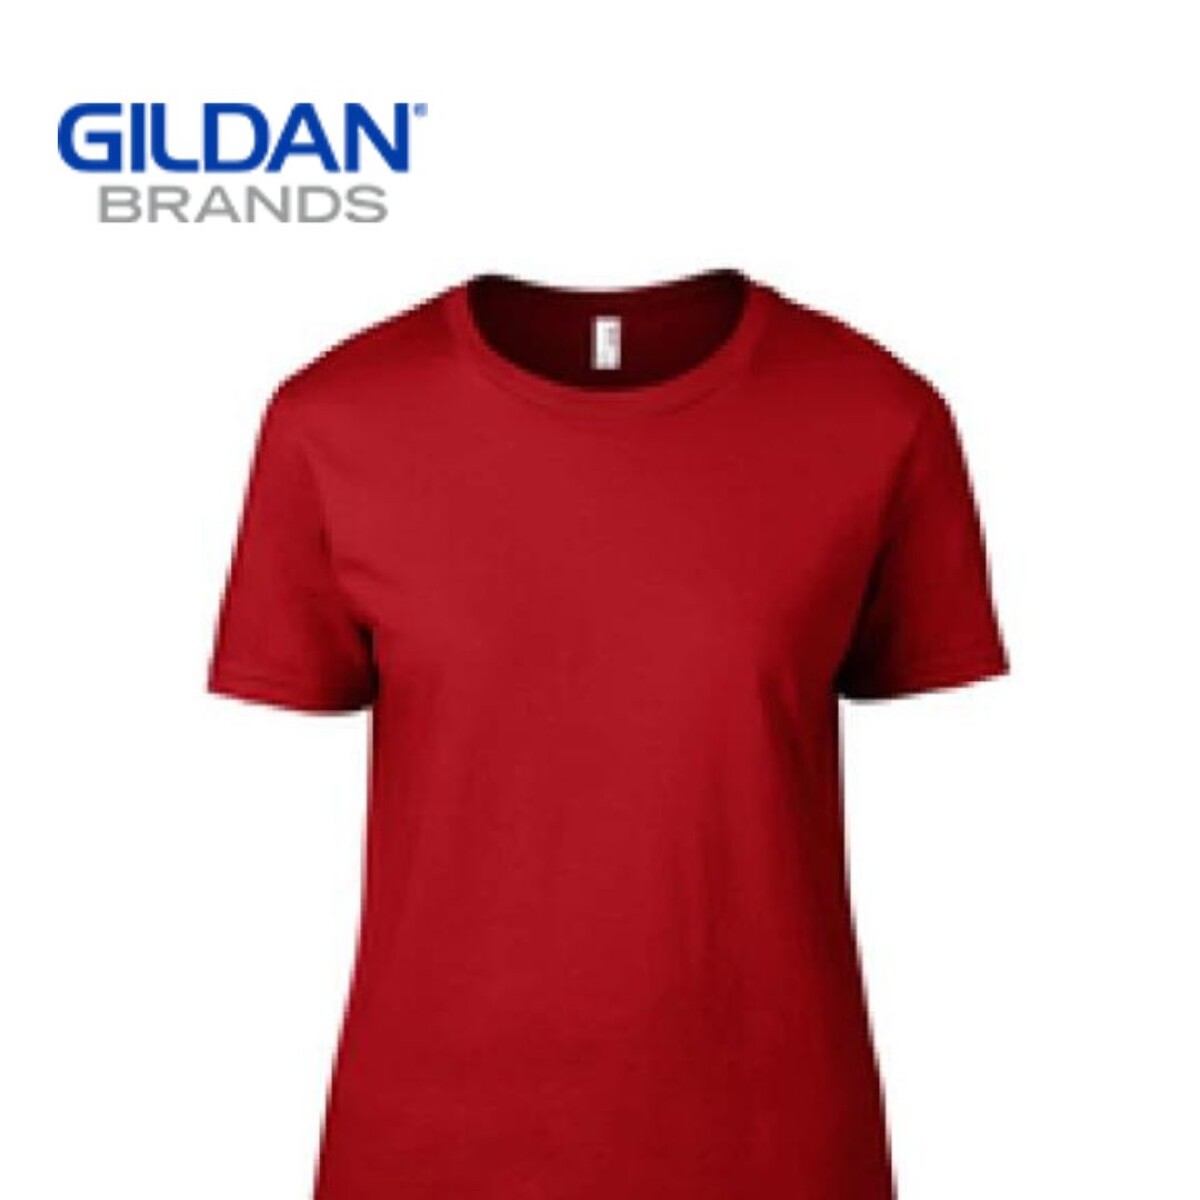 Camiseta Fashion Básica - Rojo 